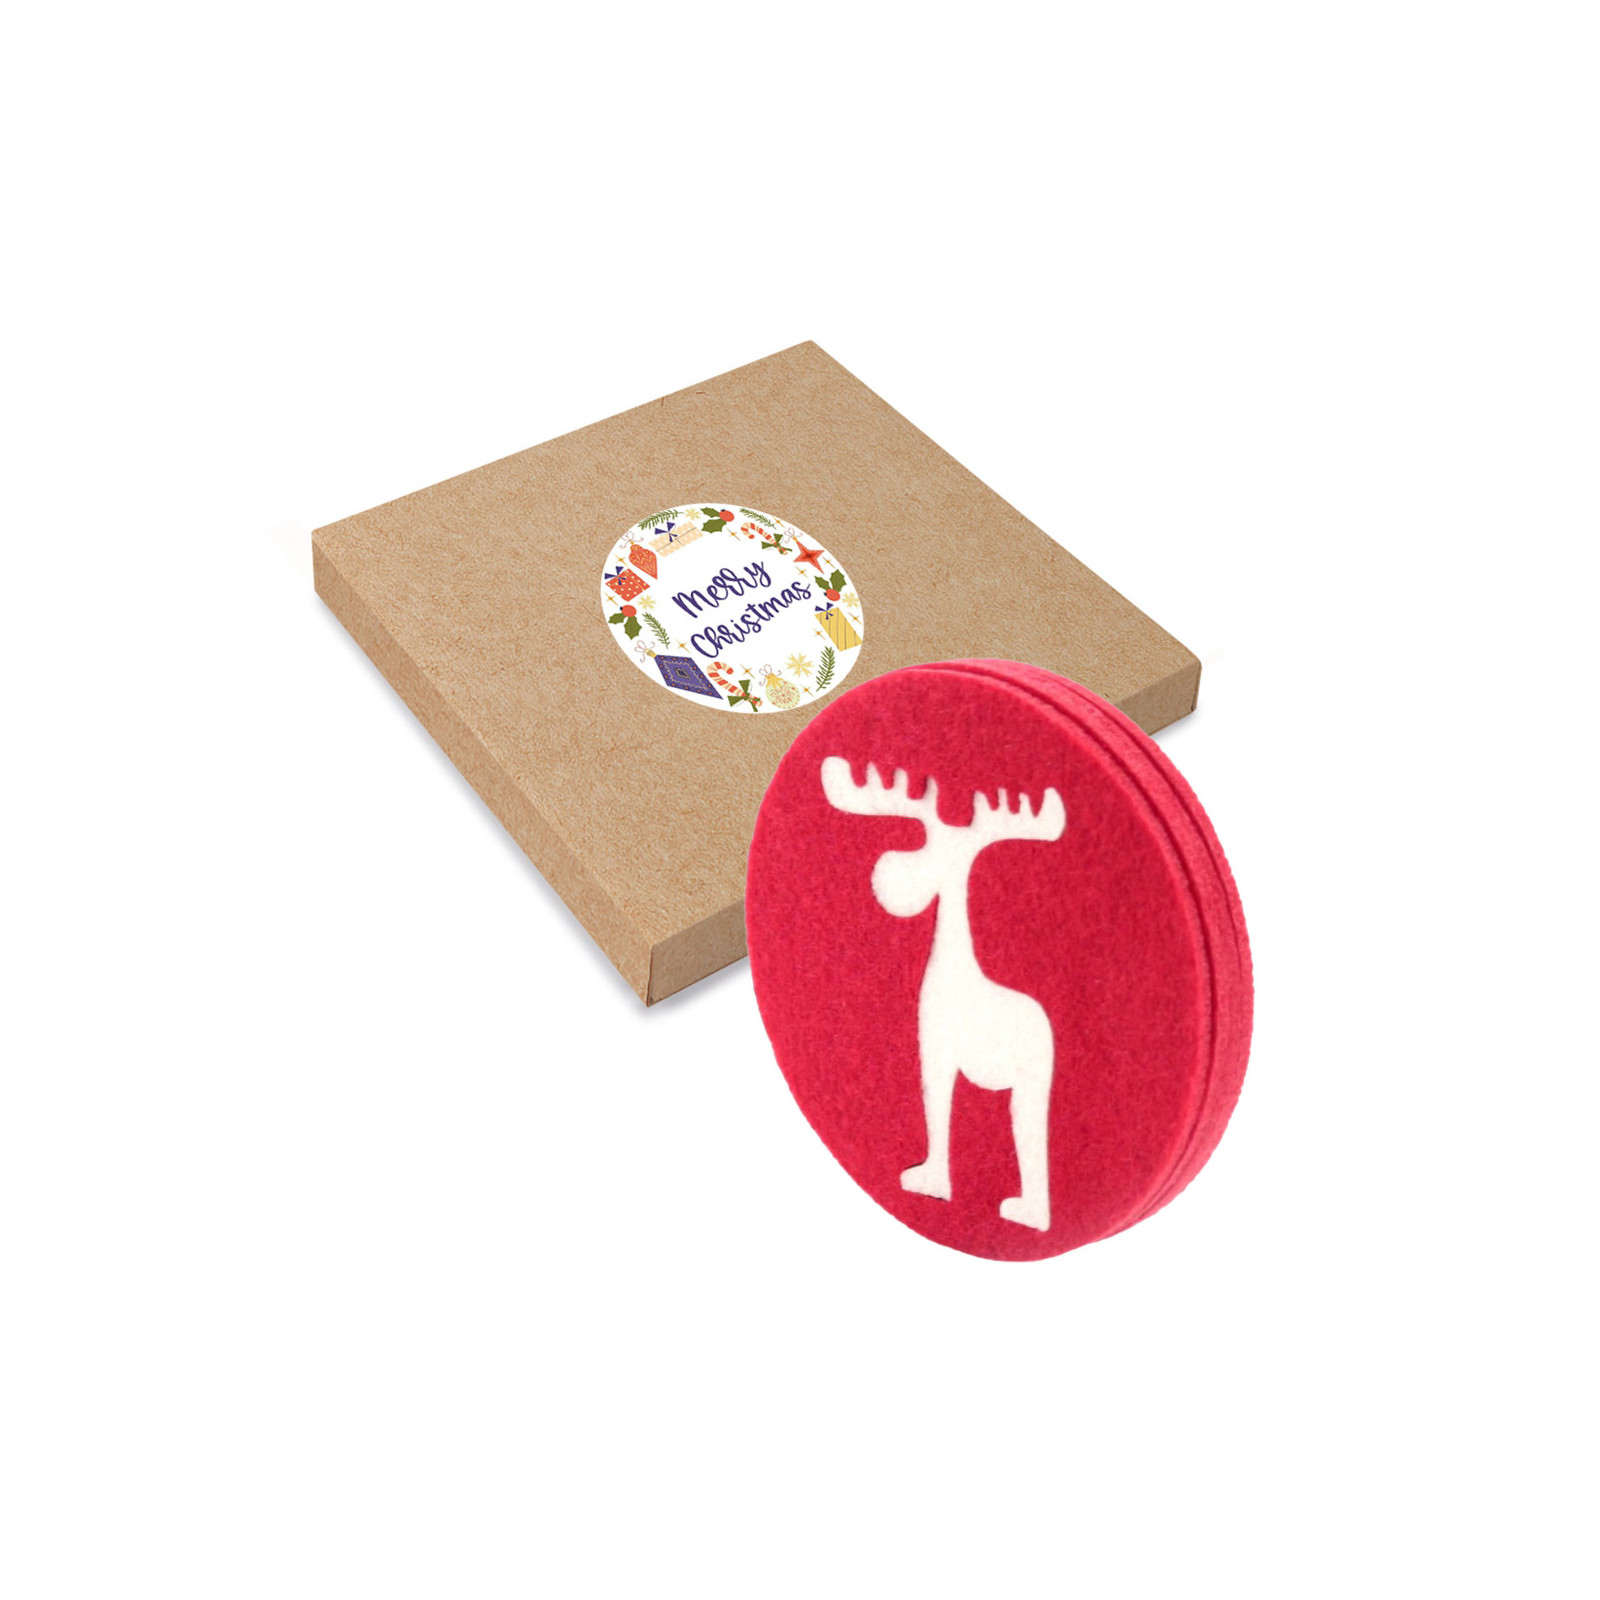 Posavasos hecho de fieltro con diseño de navidad en caja de cartón con adhesivo personalizable